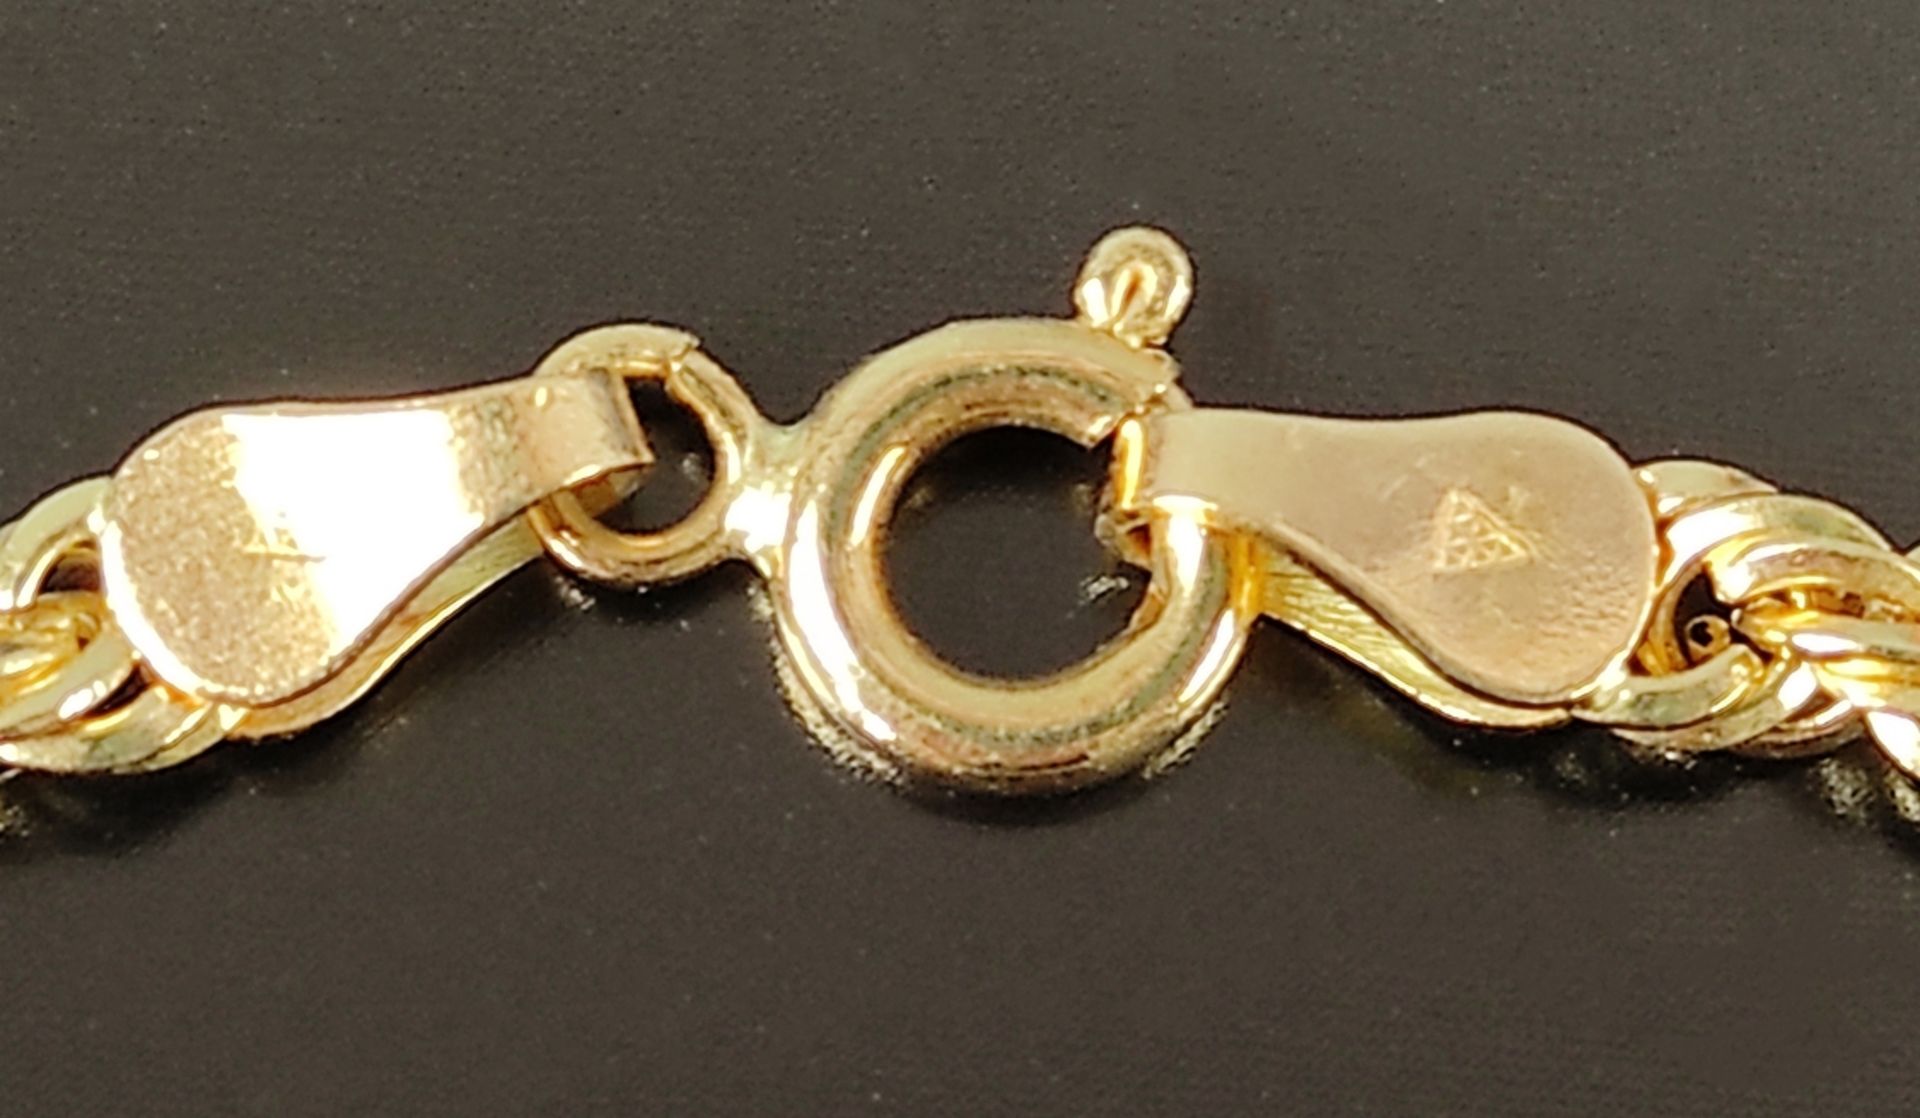 Kordel-Armband, 750/18K Gelbgold, 2,8g, Ringverschluss, Länge 18cm - Bild 2 aus 3